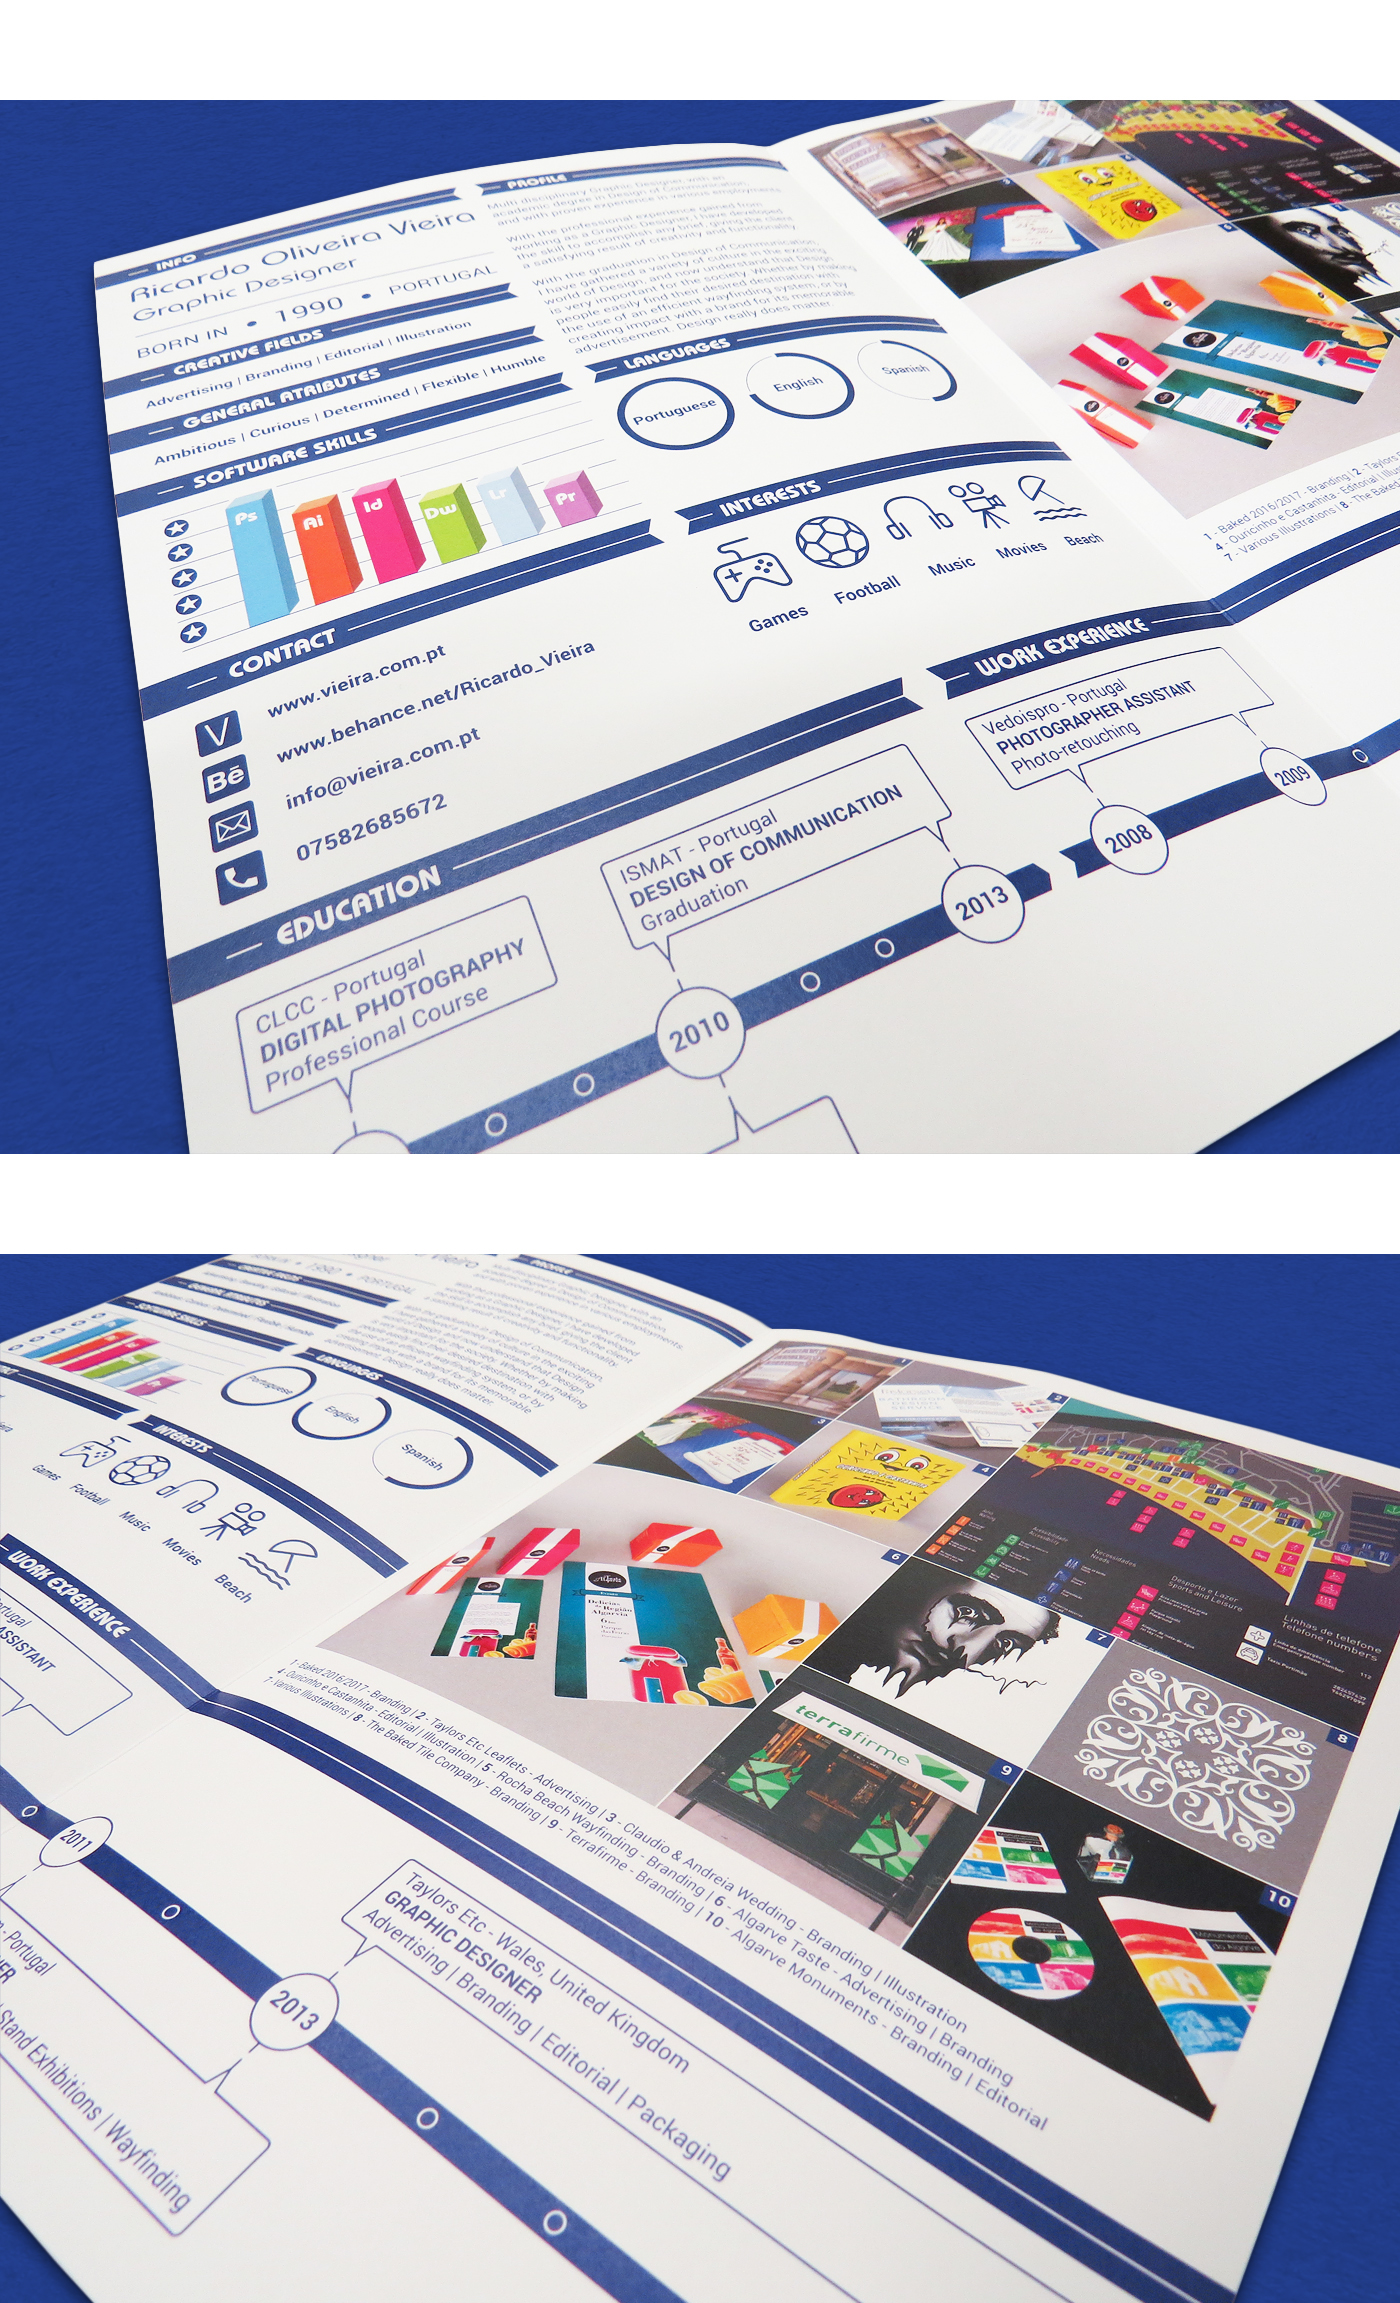 vieira portfolio Graphic Designer CV ideas creative poster business card brand Stationery